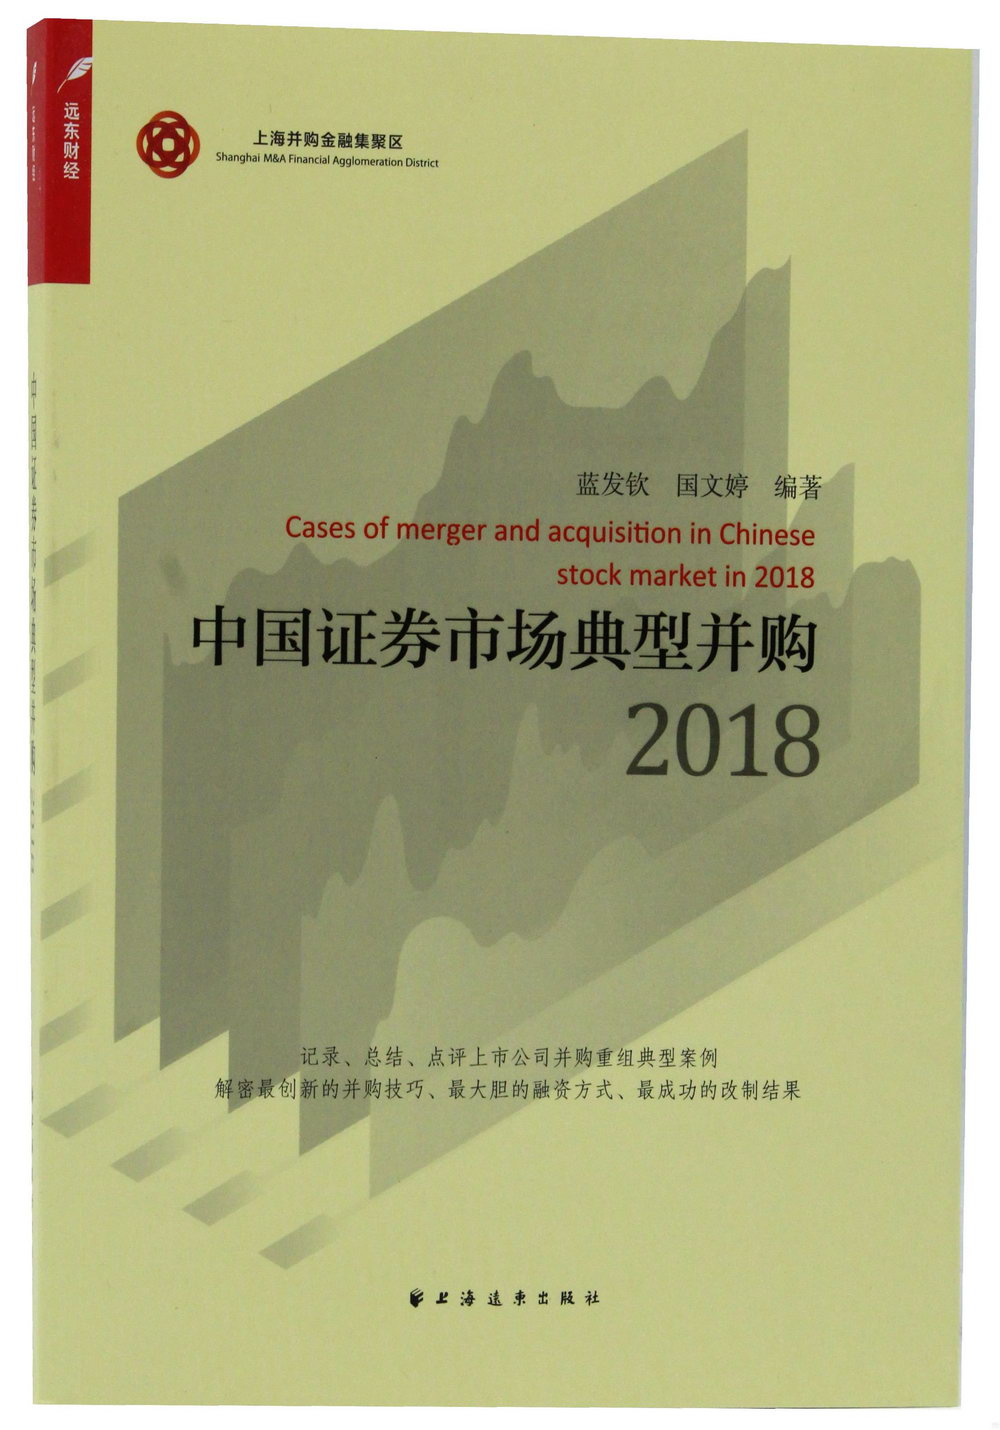 2018中國證劵市場典型併購